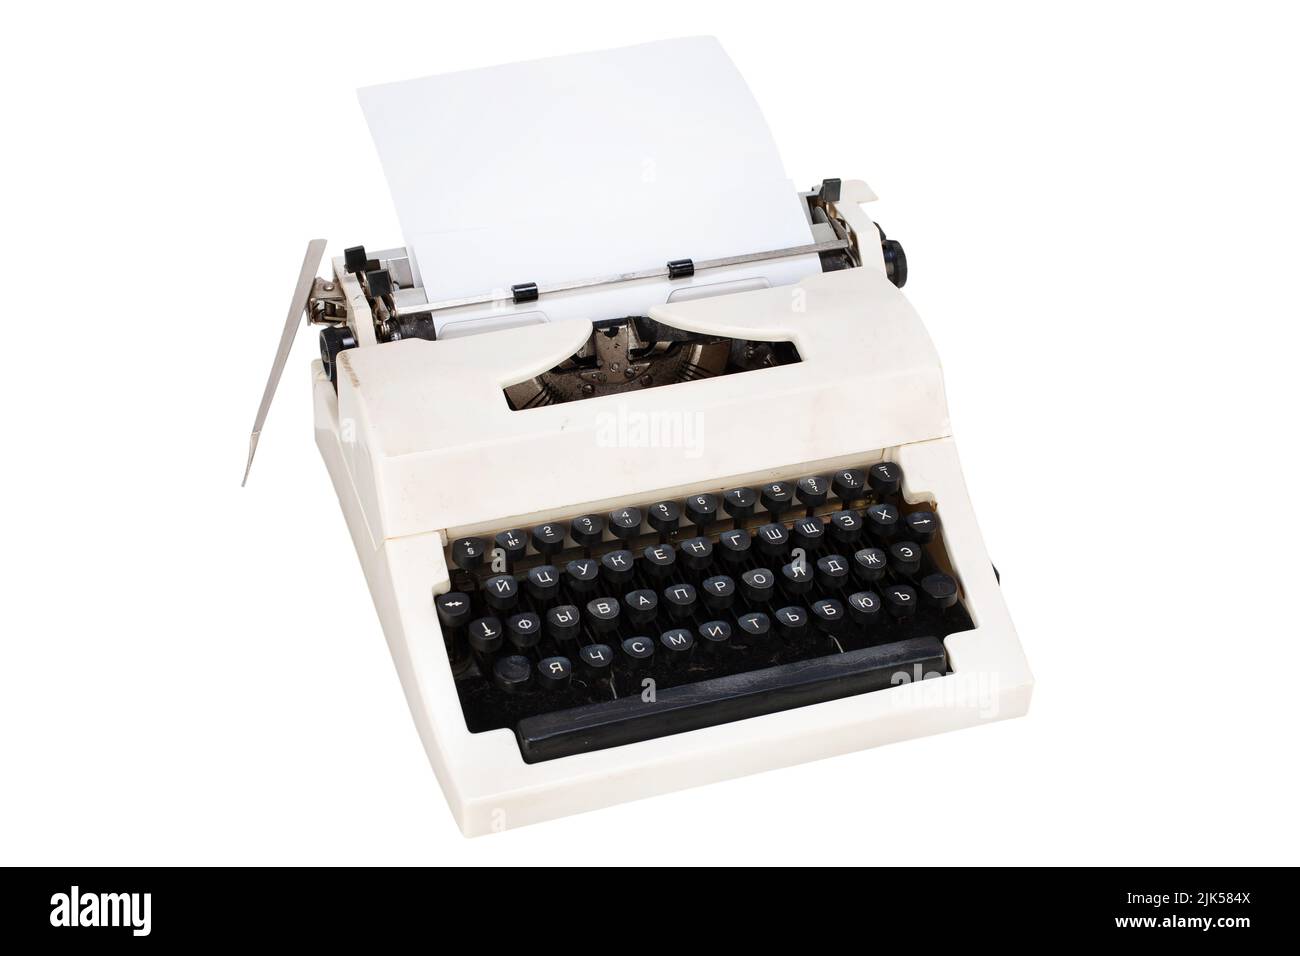 White typewriter with cyrillic keyboard layout USSR era isolated on white background Stock Photo